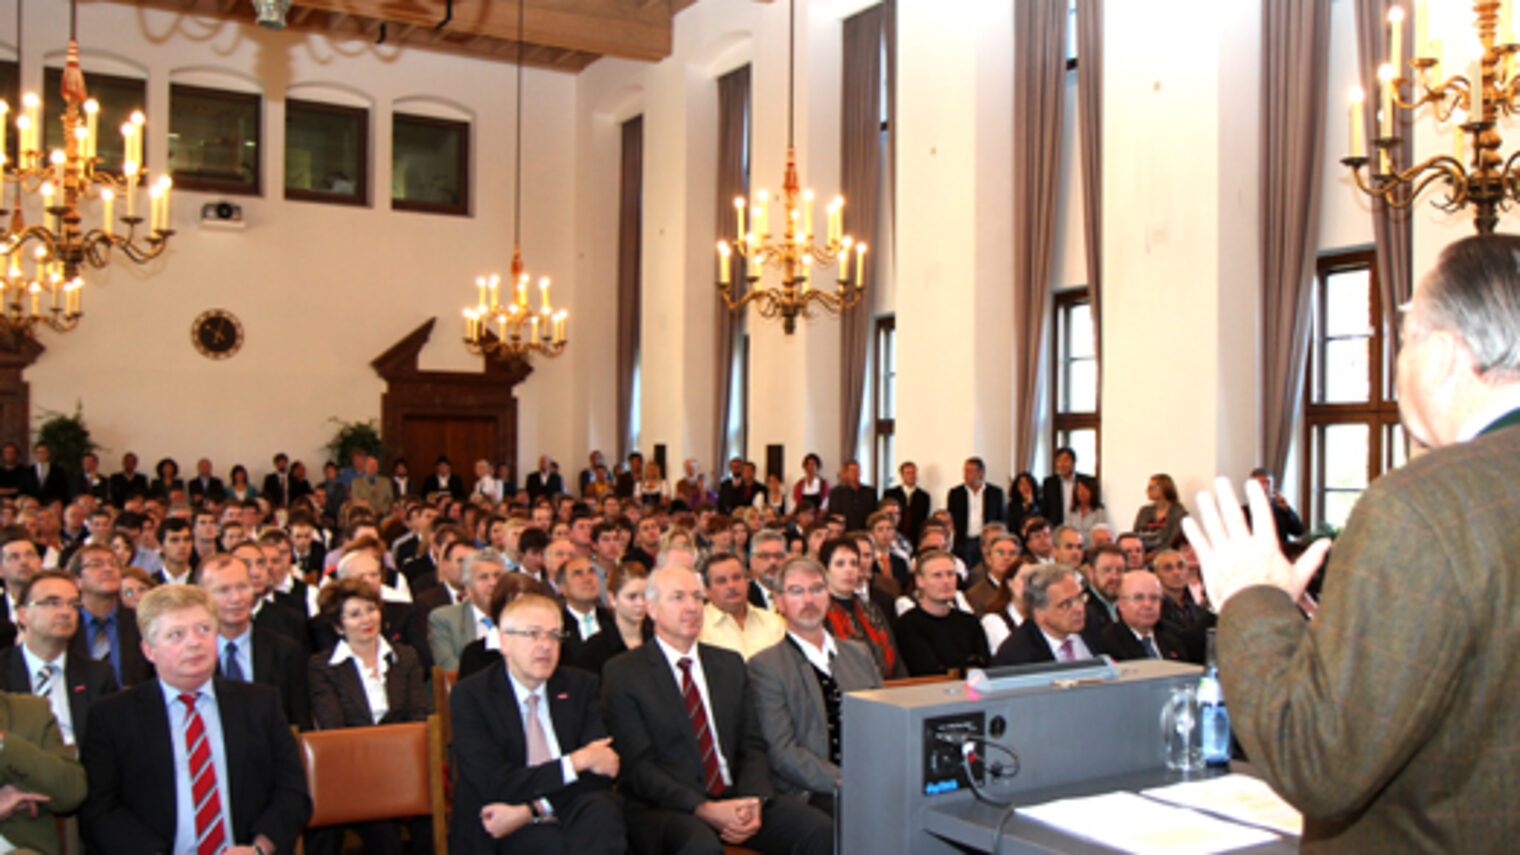 Leistungswettbewerb des Deutschen Handwerks auf Kammerebene 2012